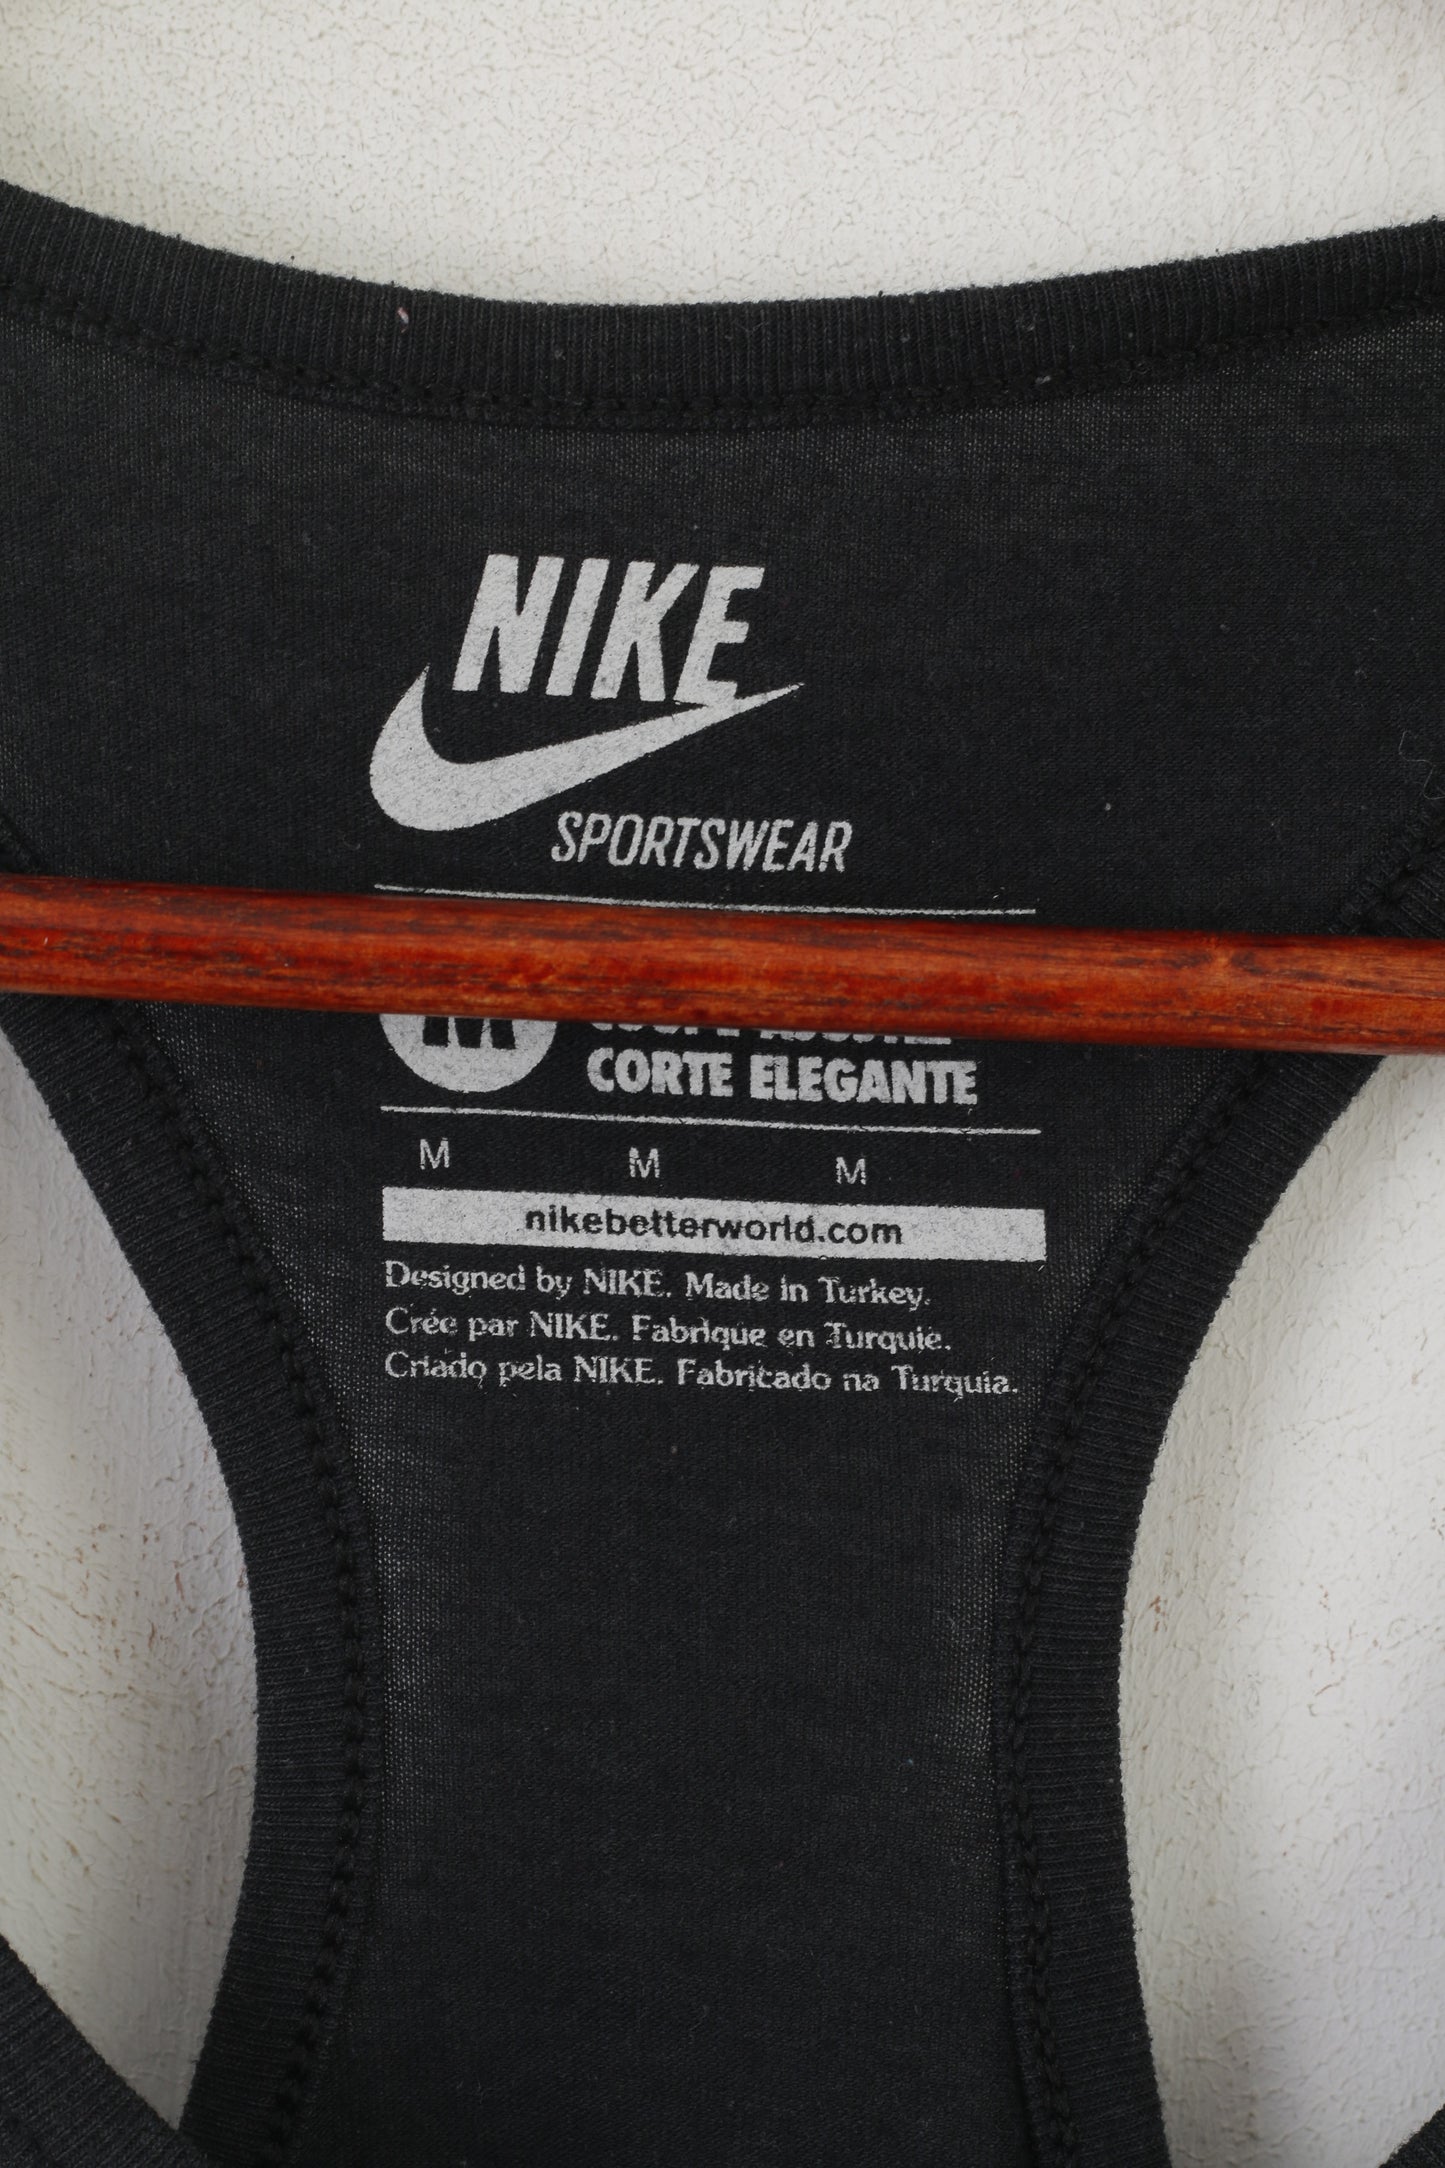 Nike Sportswear Femme M Chemise Noir Coton Slim Fit Training Débardeur